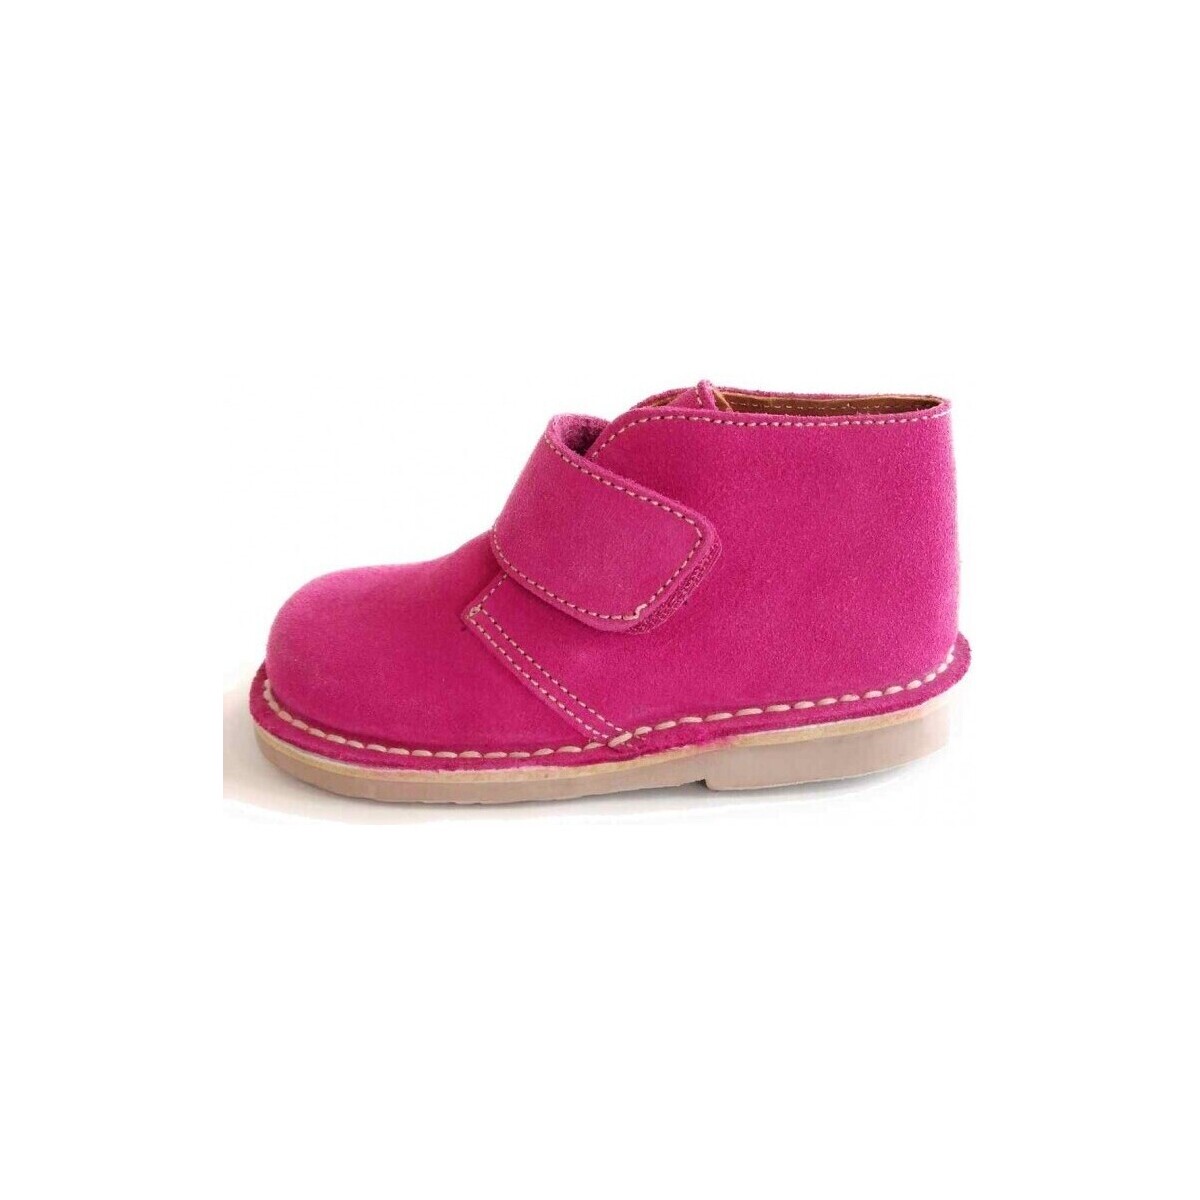 Παπούτσια Μπότες Colores 16117-18 Ροζ